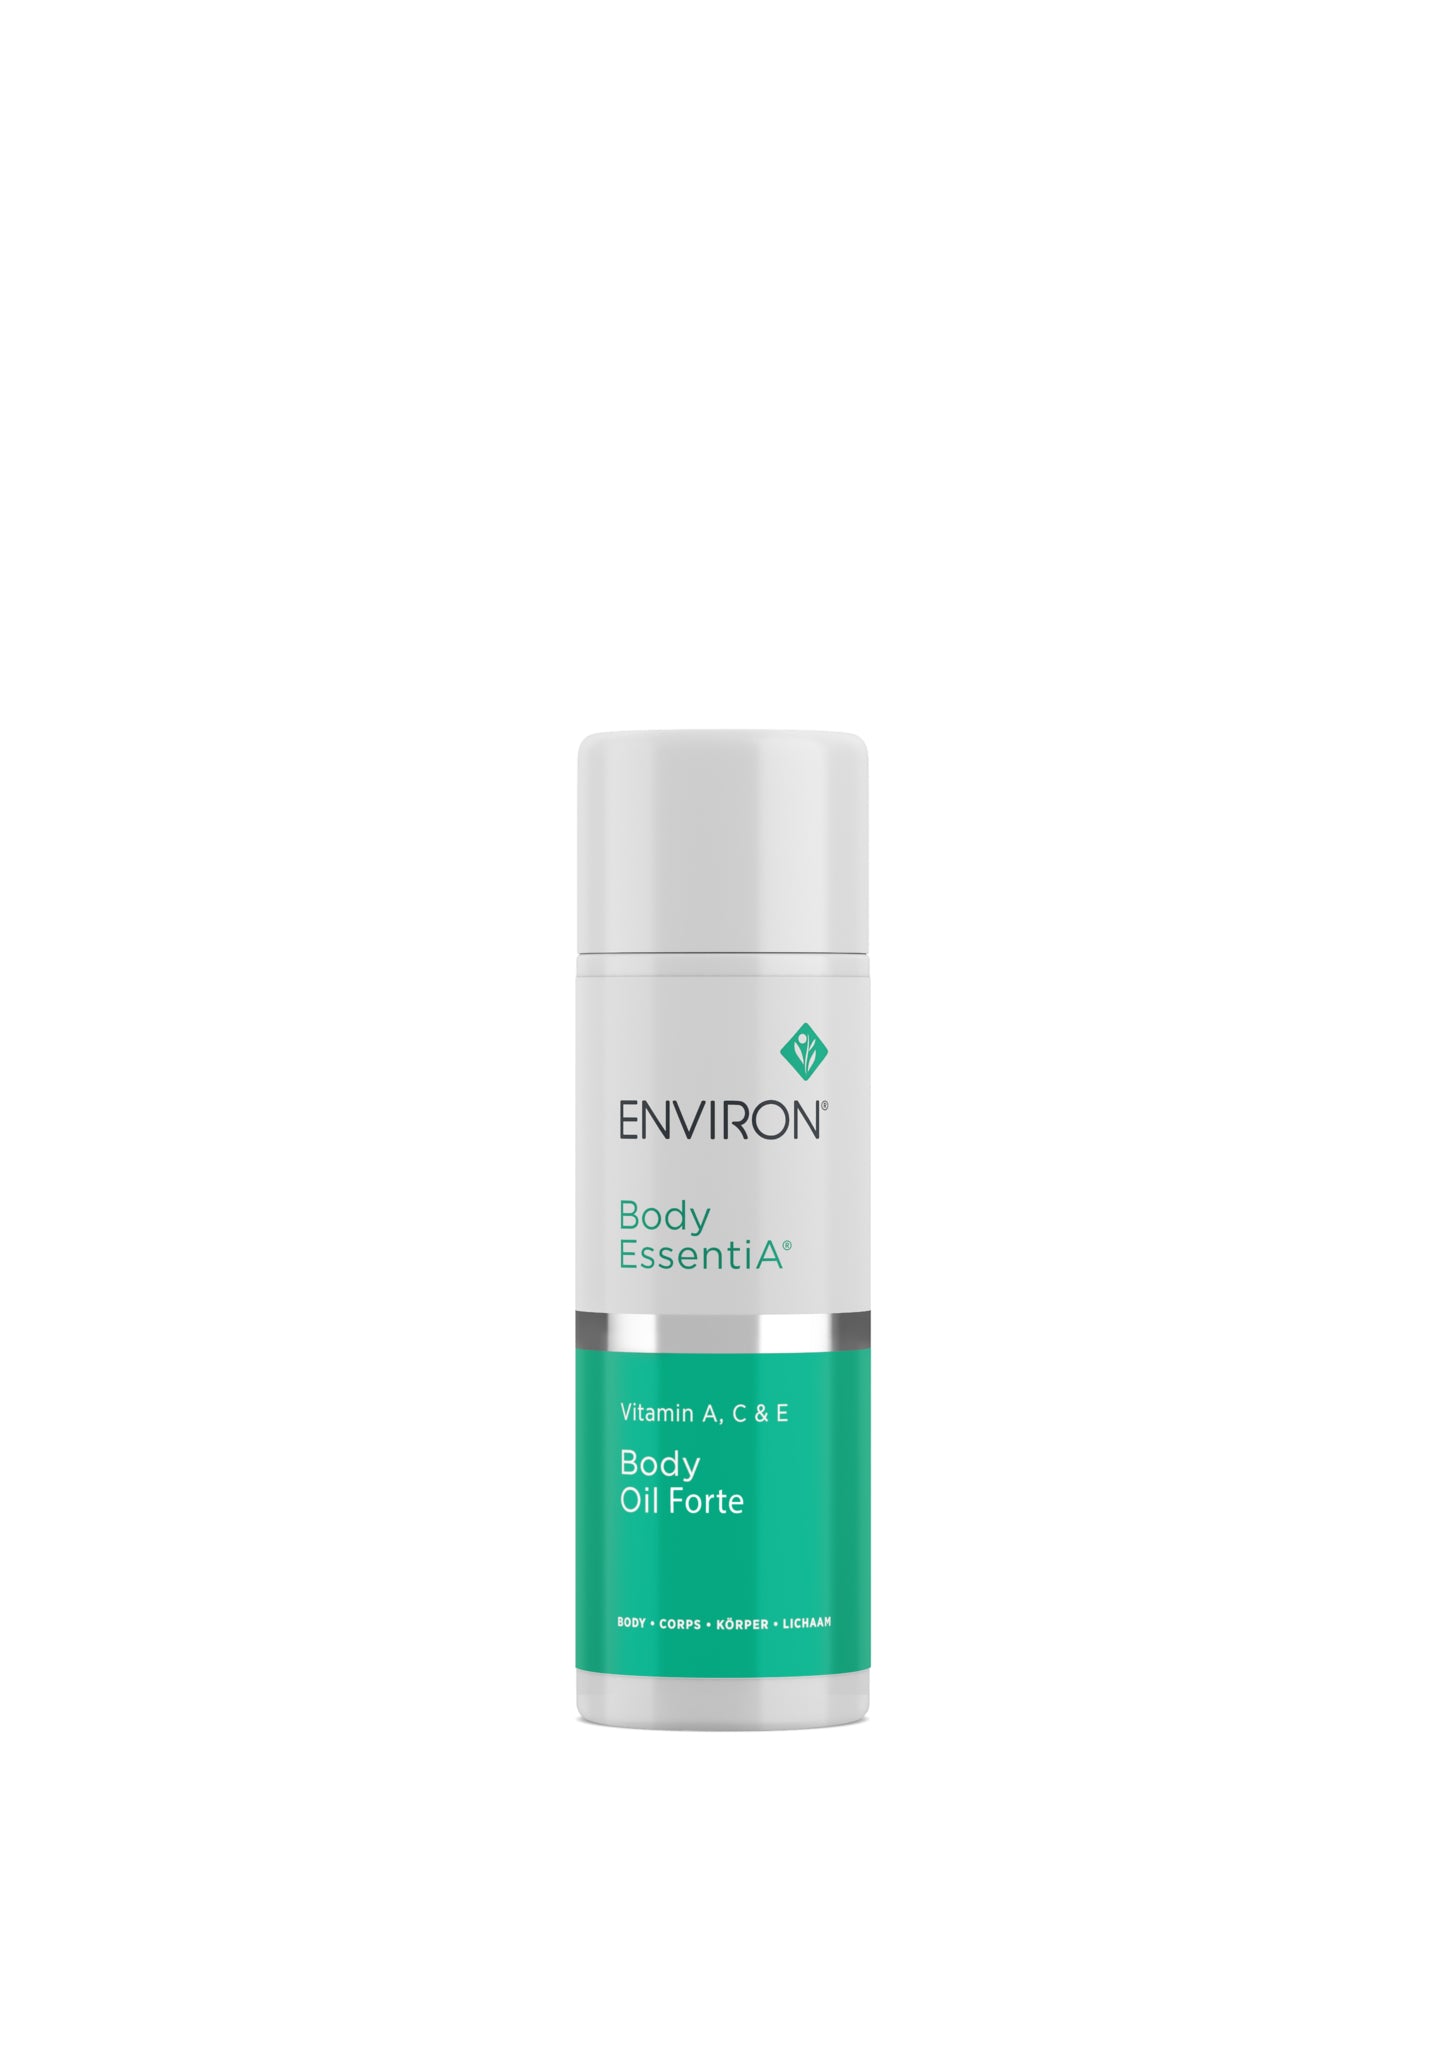 Environ Body EssentiA range - Vitamin A, C & E Body Oil Forte